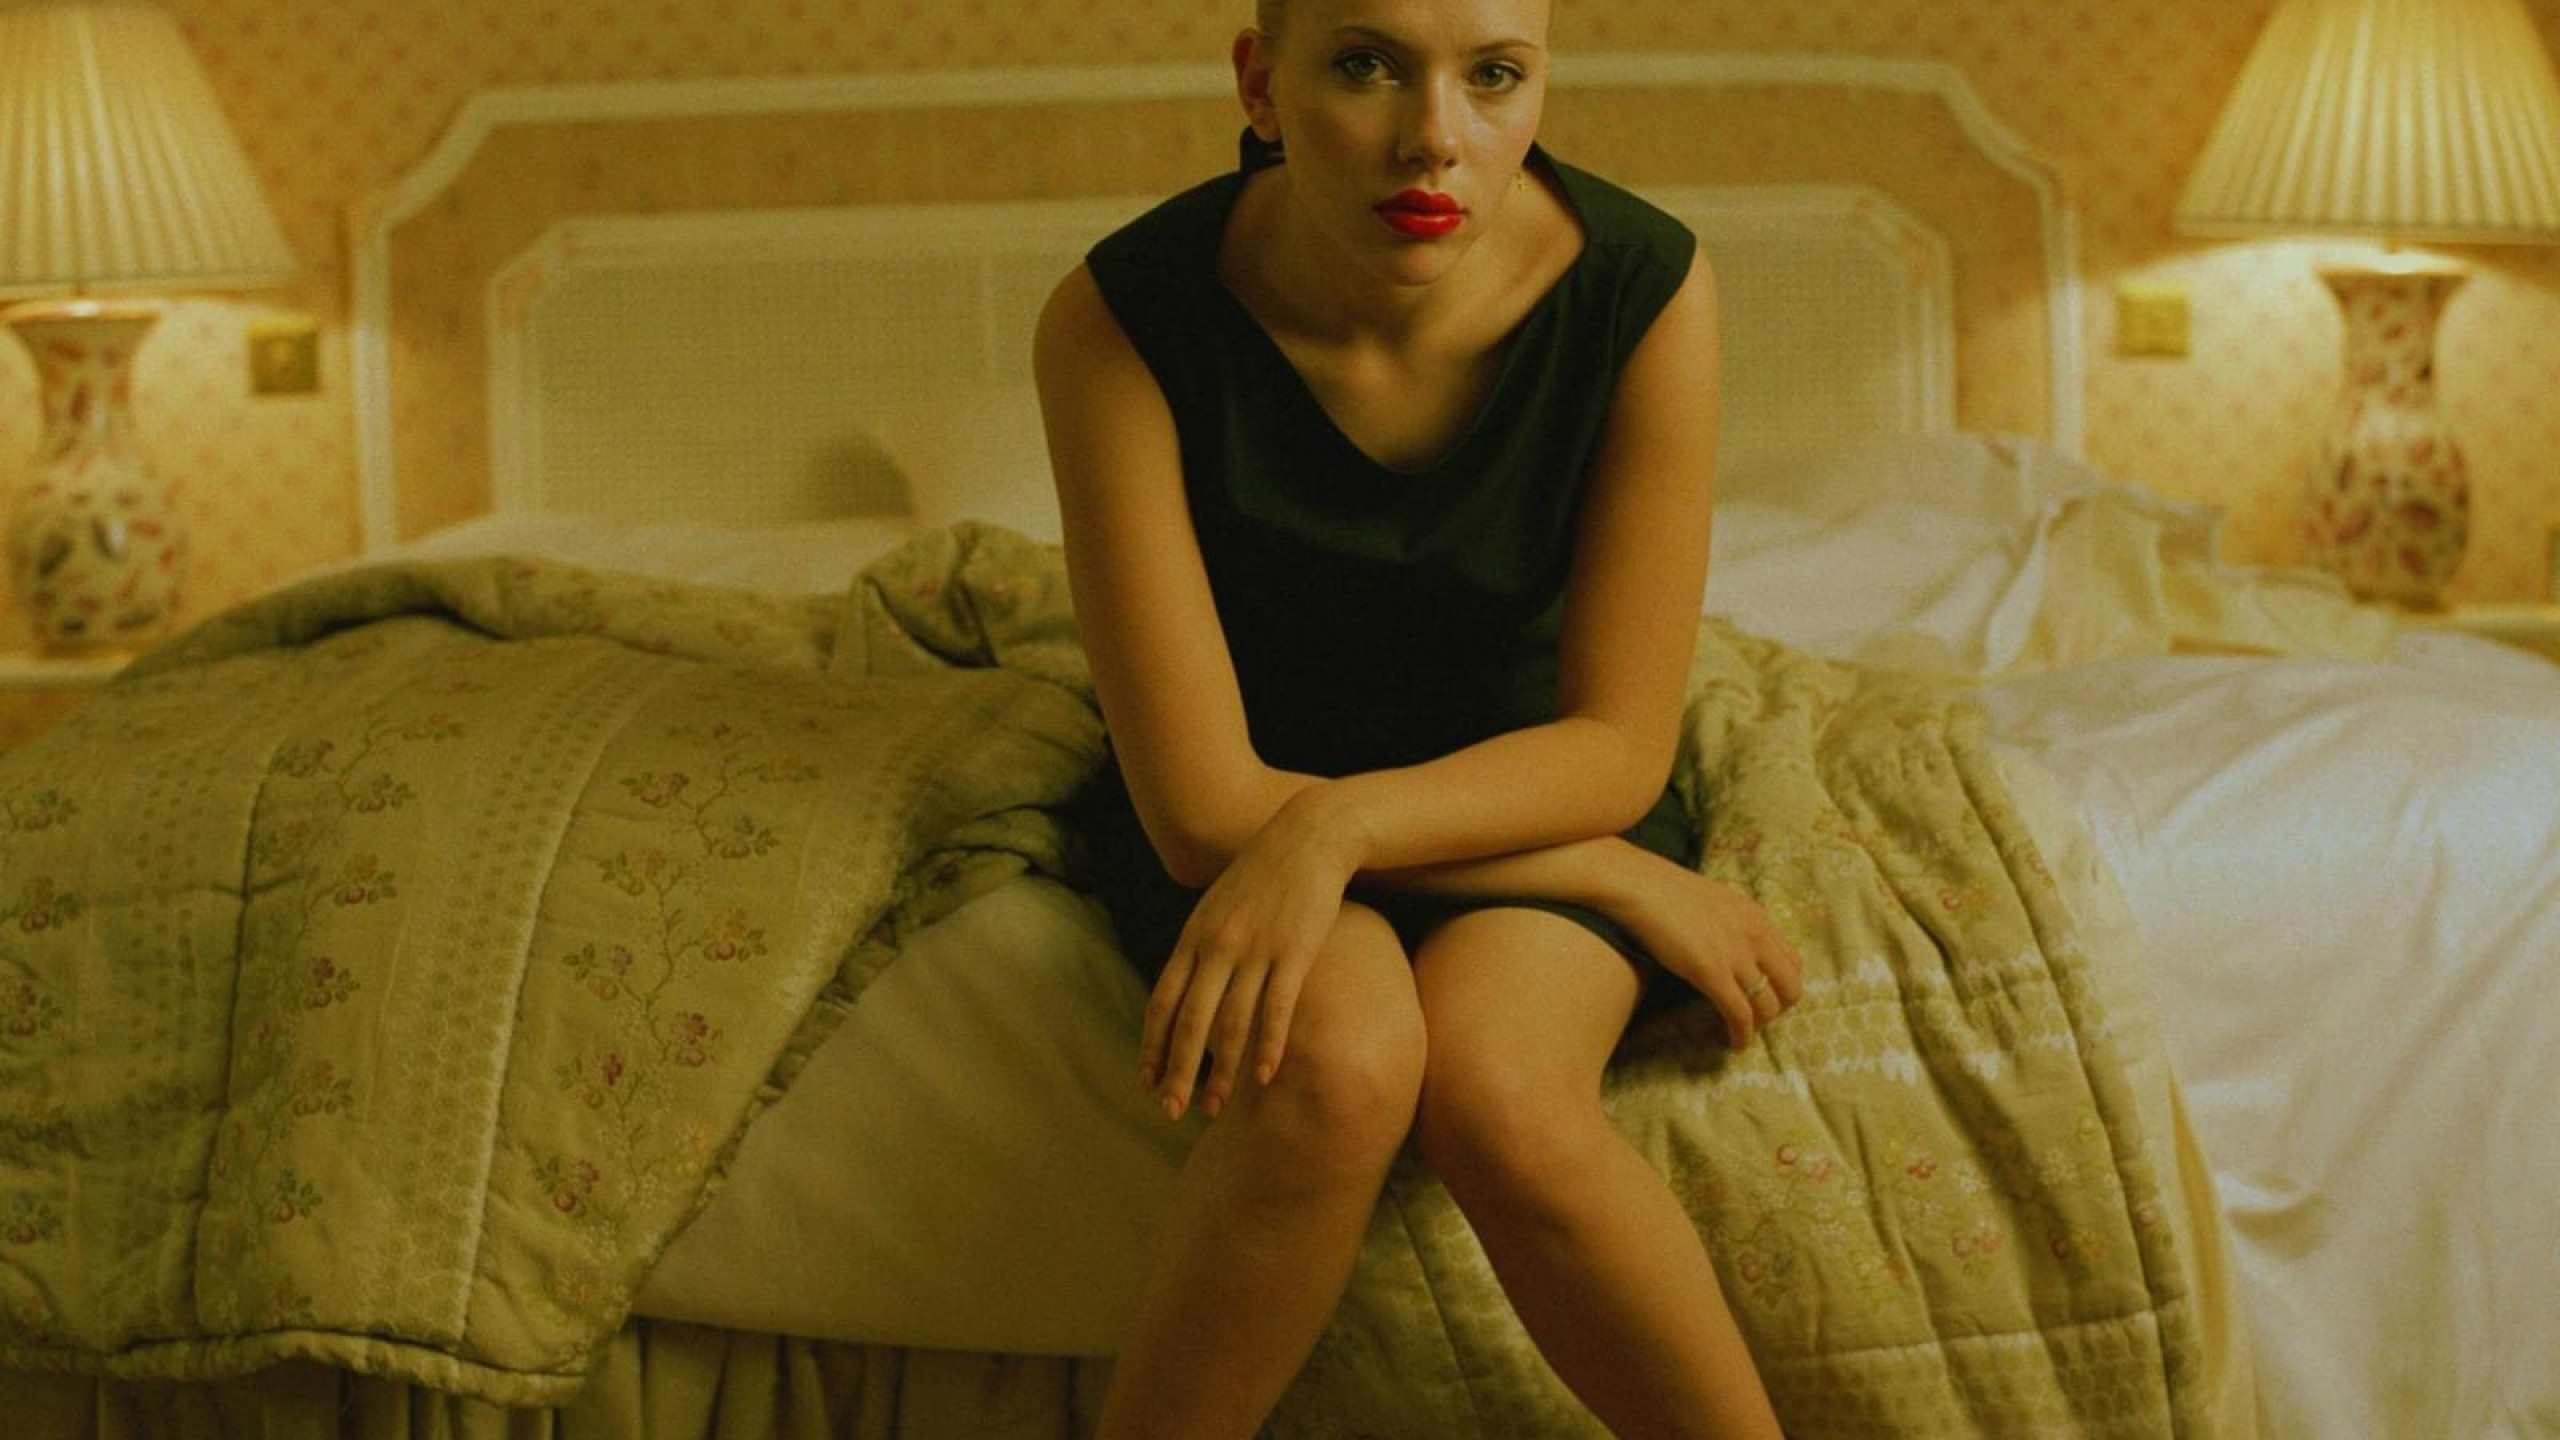 Scarlett Johansson In Bed Hd Wallpaper Youtube Cover Photo Hd Wallpaper